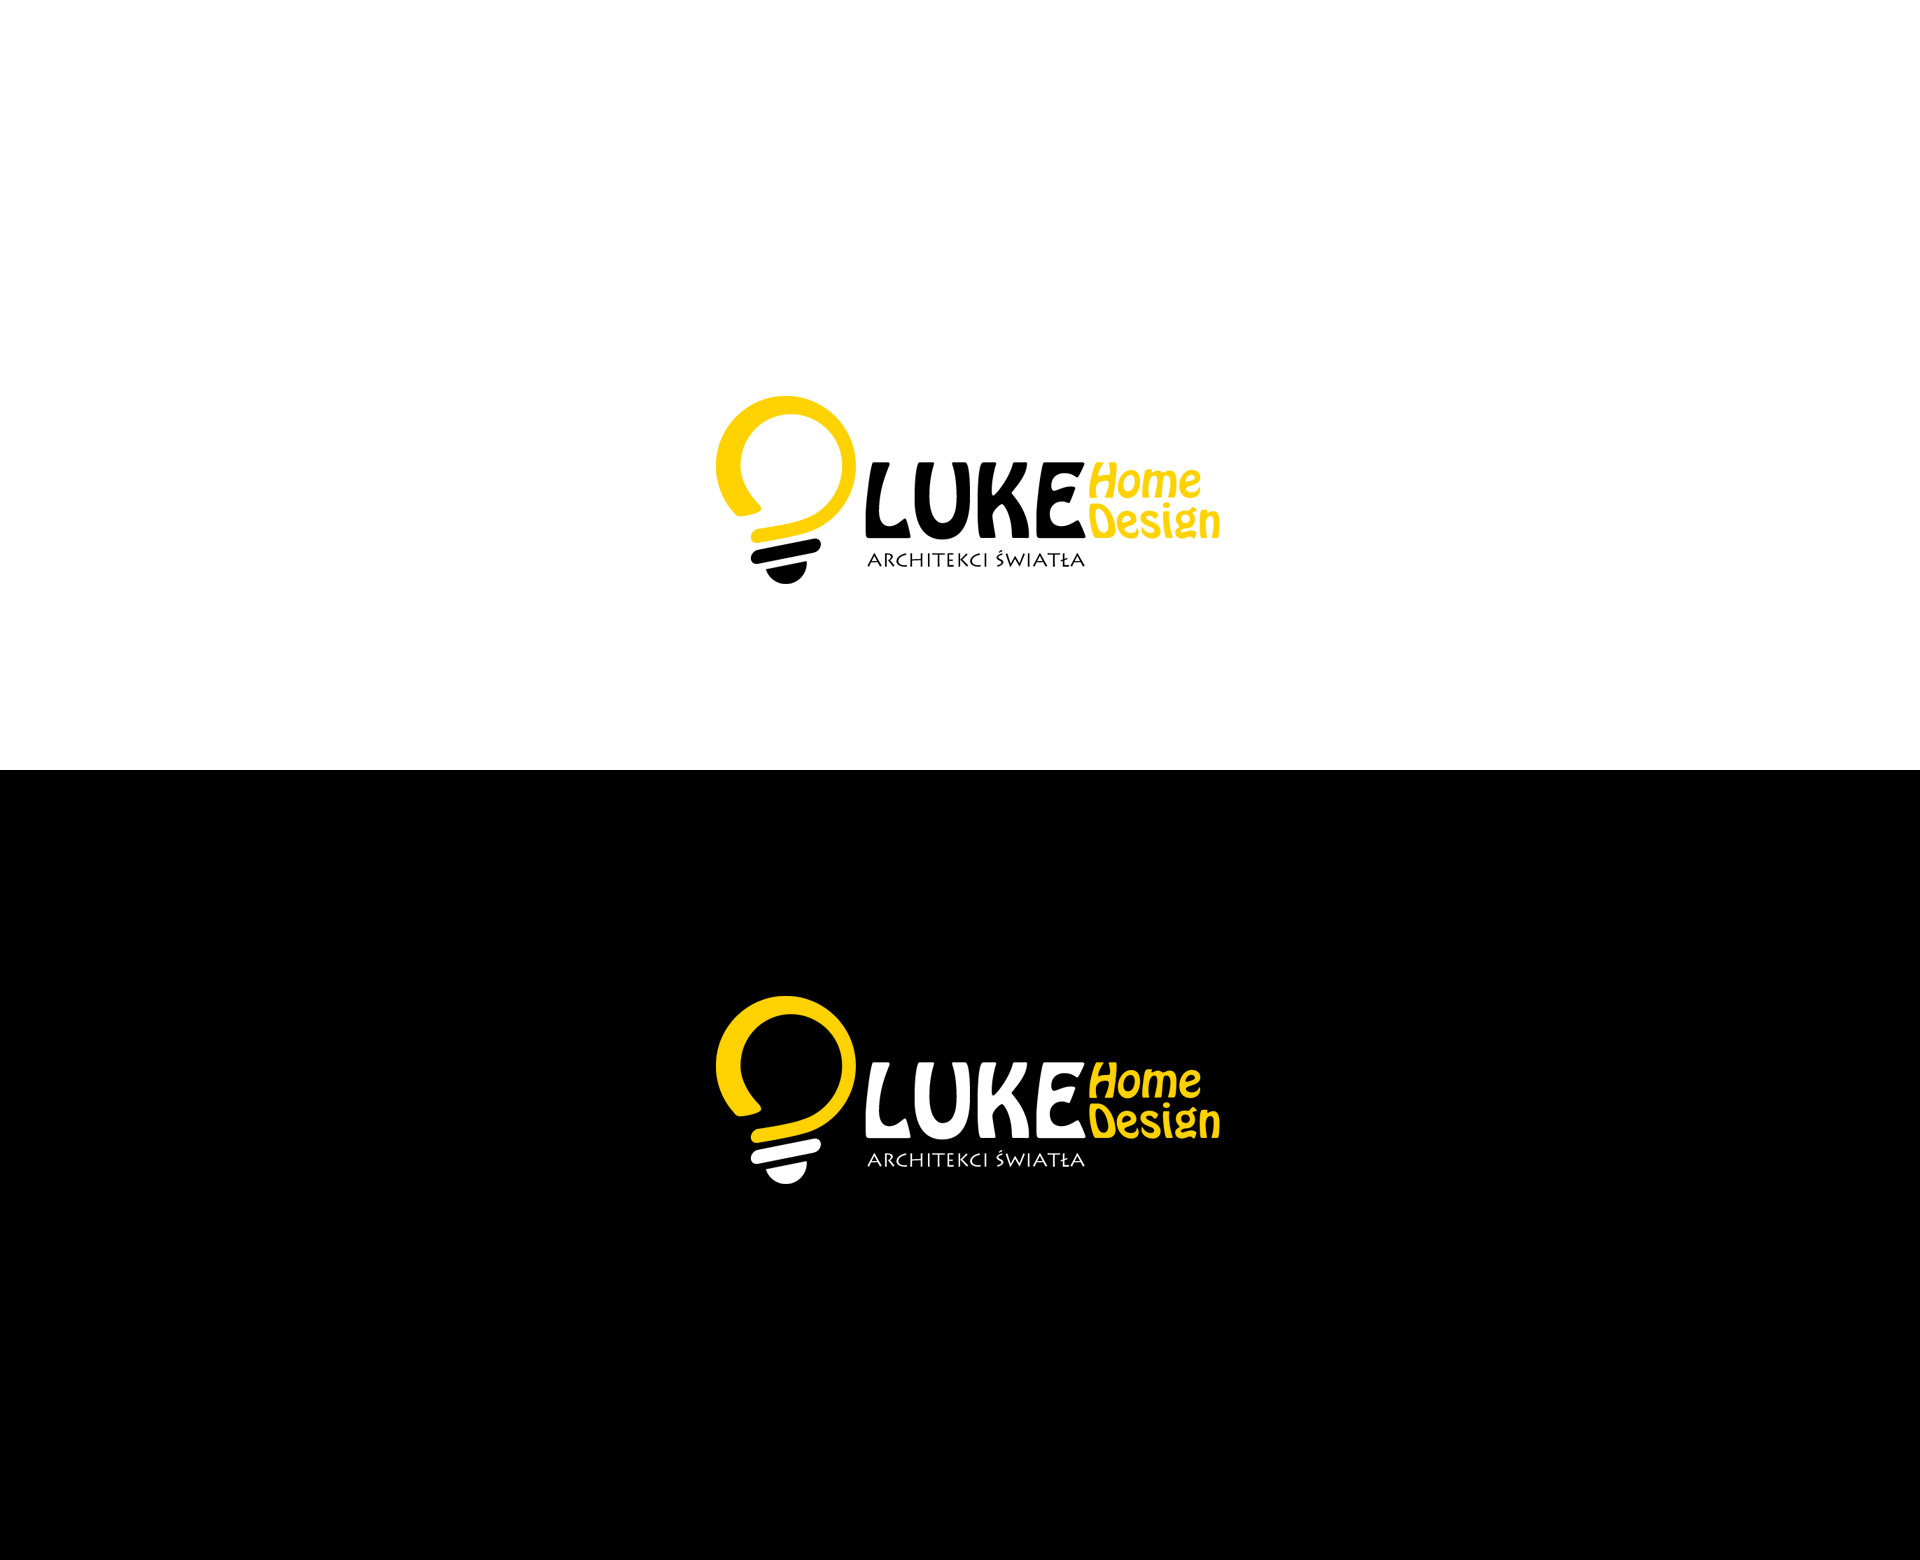 Luke Home Design